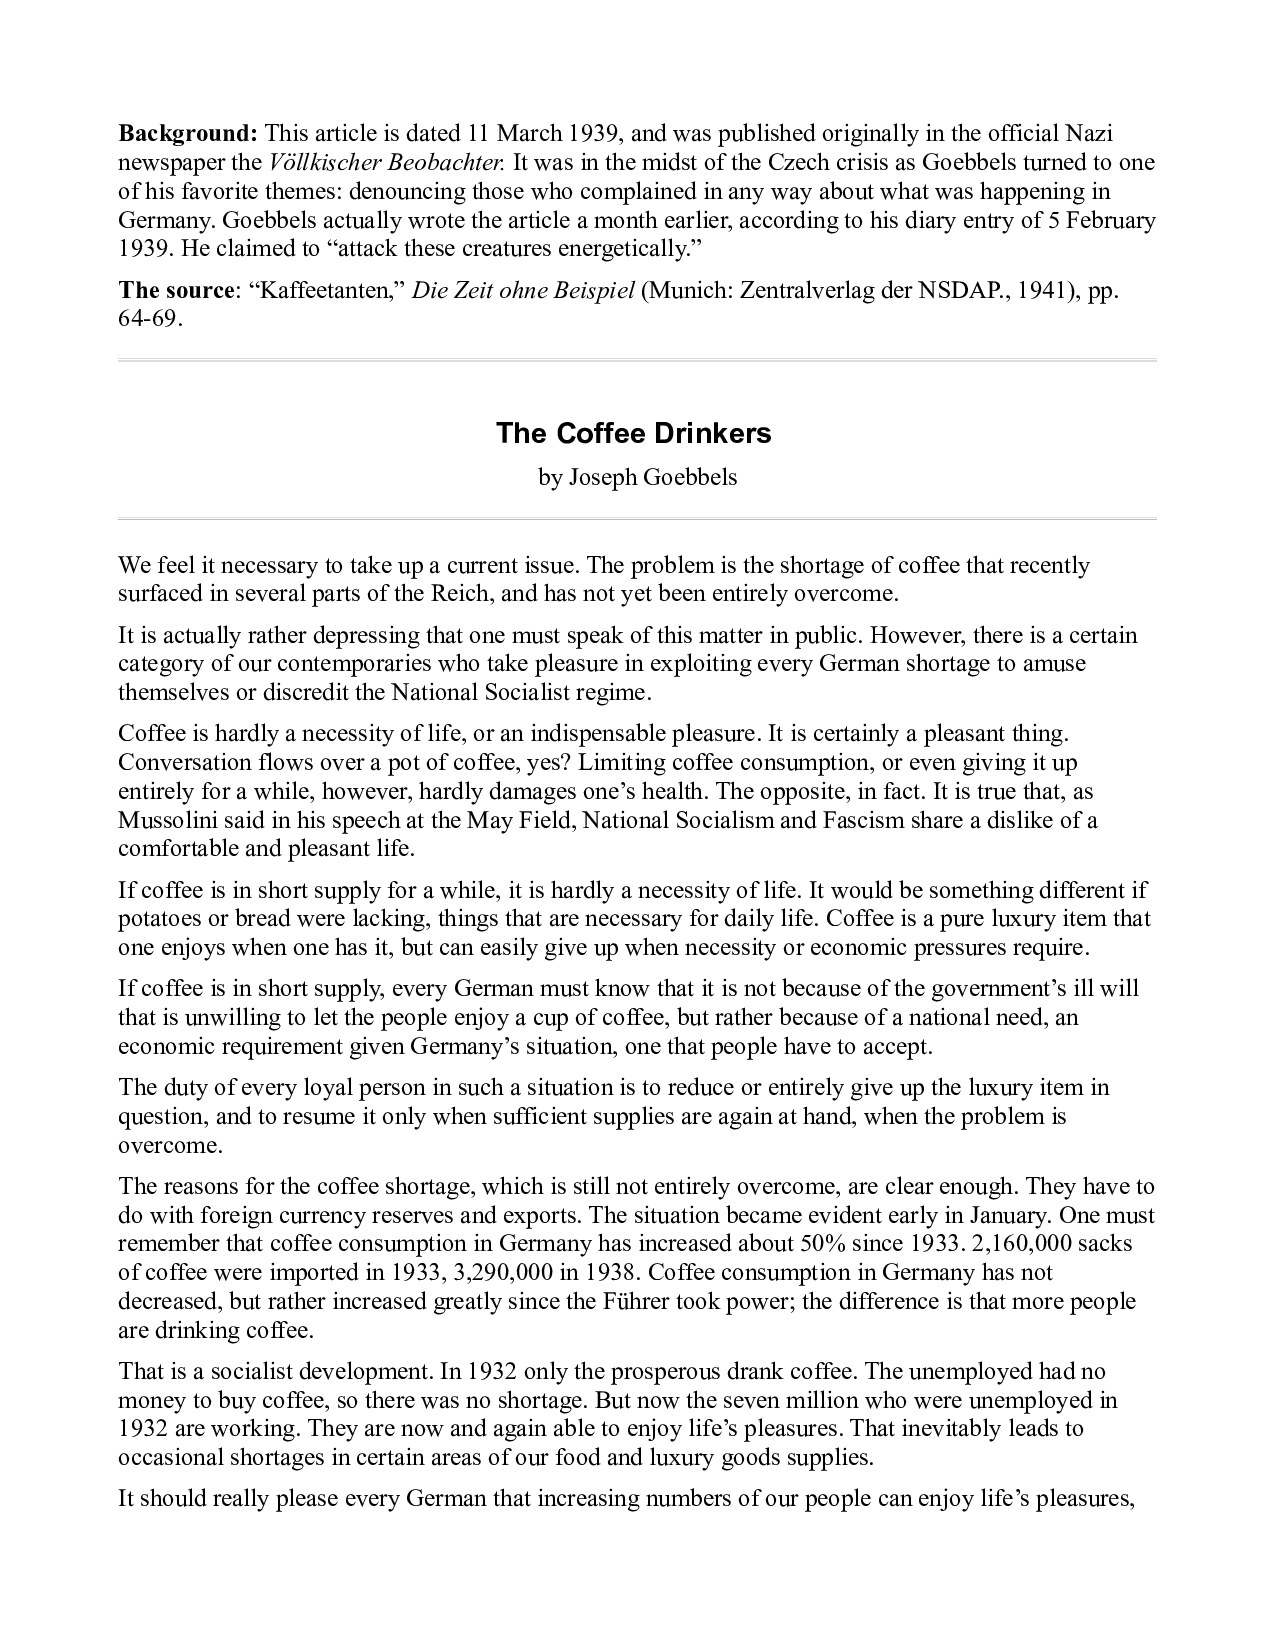 The Coffee Drinkers - Goebbels